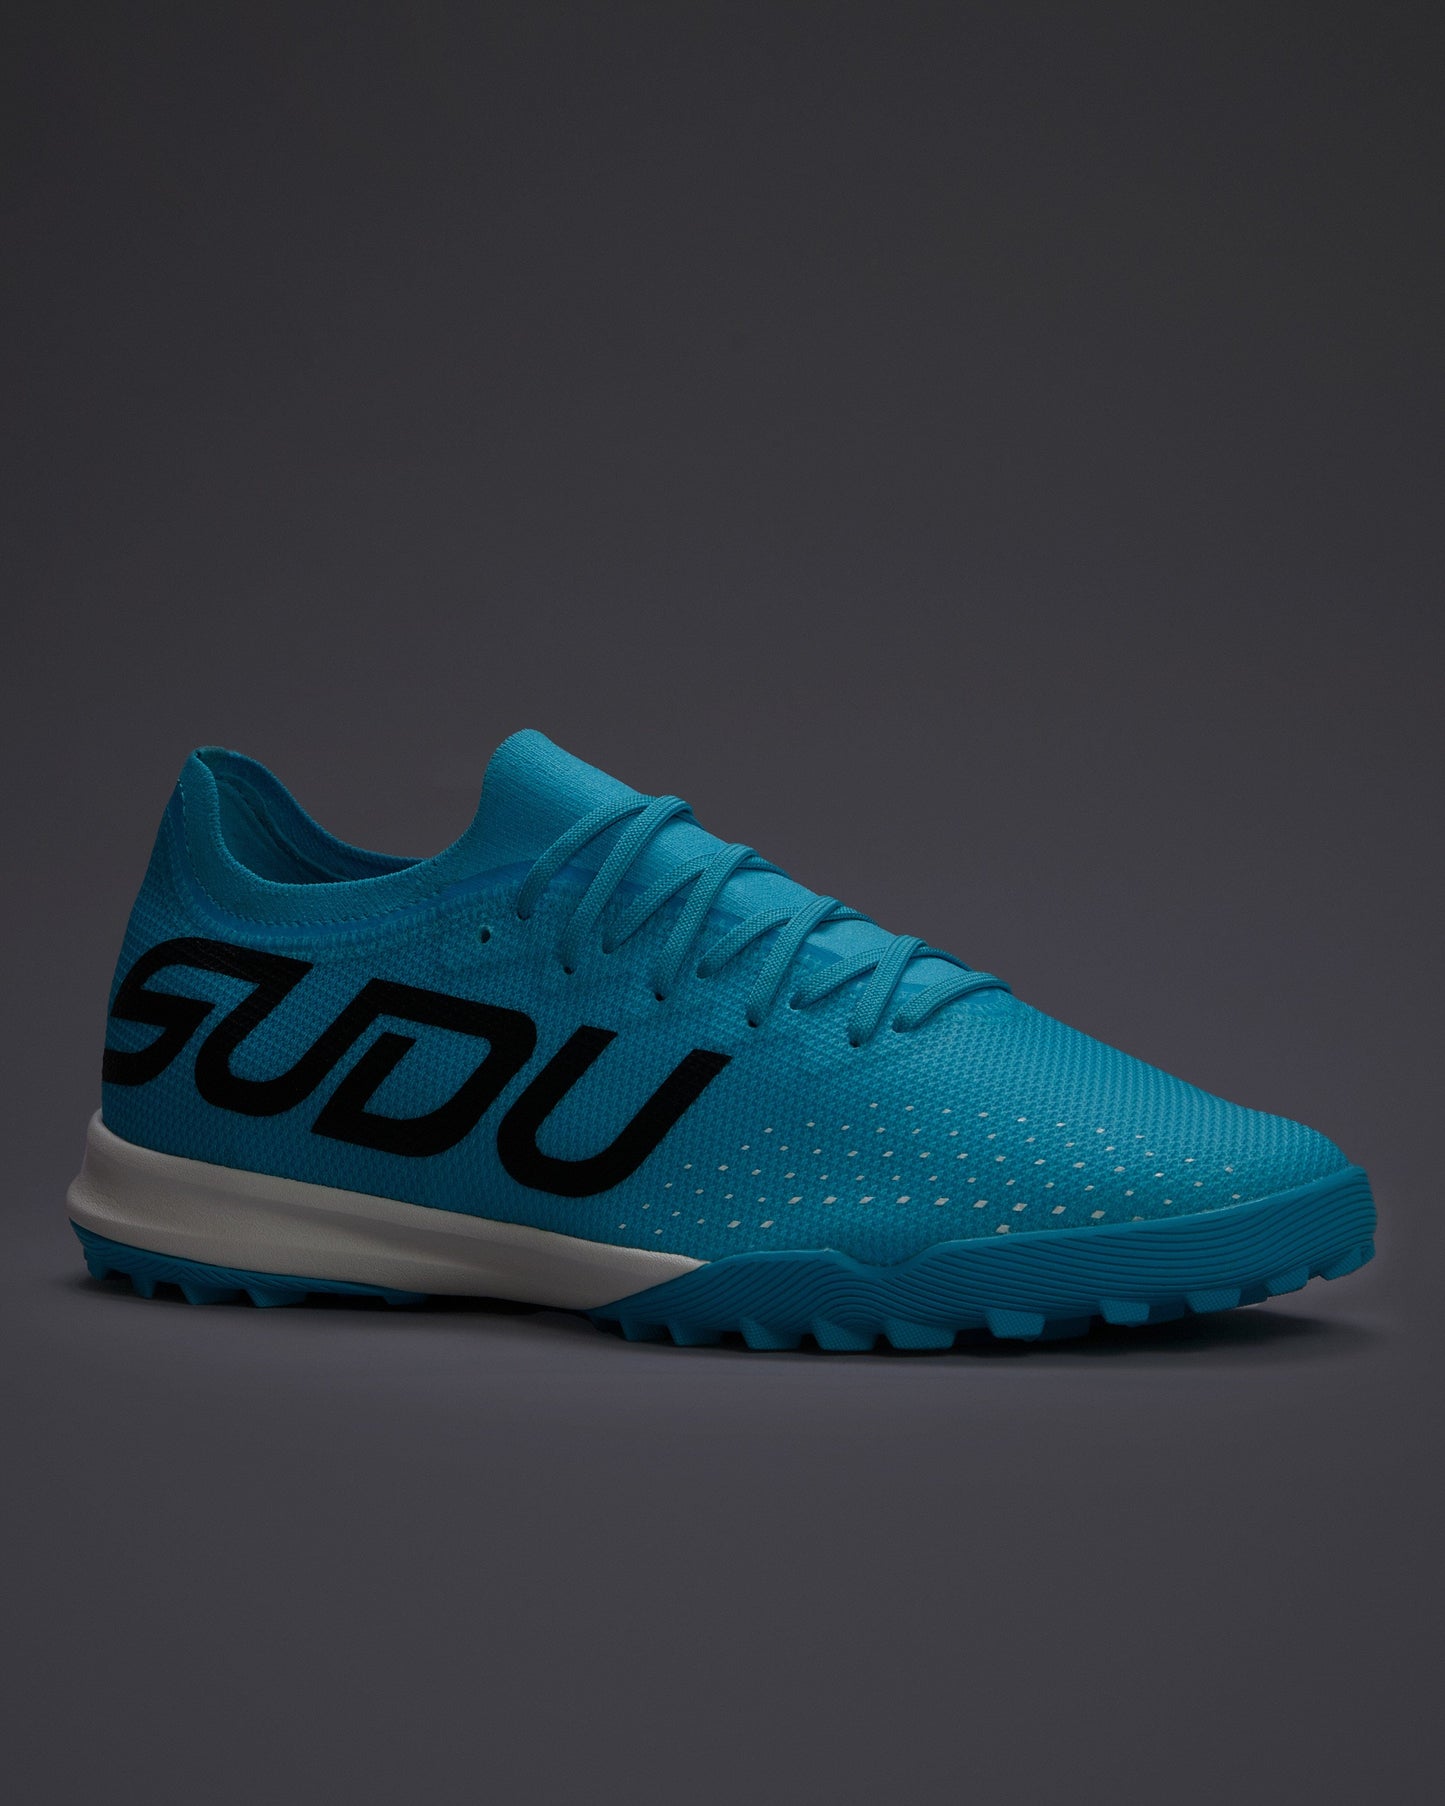 SUDU SFS TT 01 Turf - Blue UK 6 Astroturf Shoe